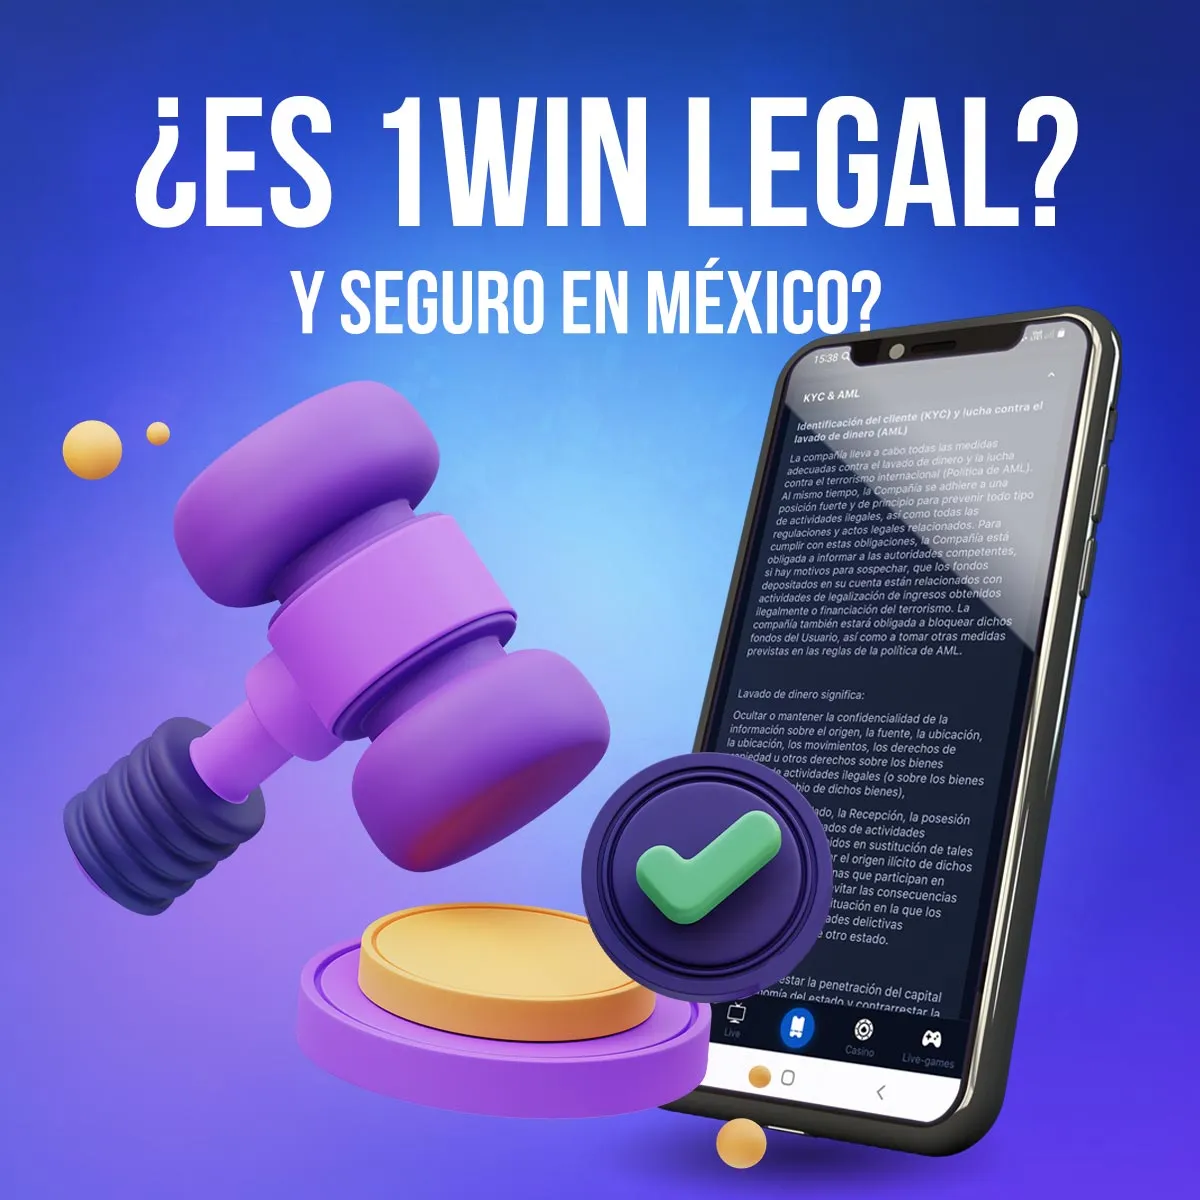 1win es una casa de apuestas legal con licencia de Curacao eGaming en México